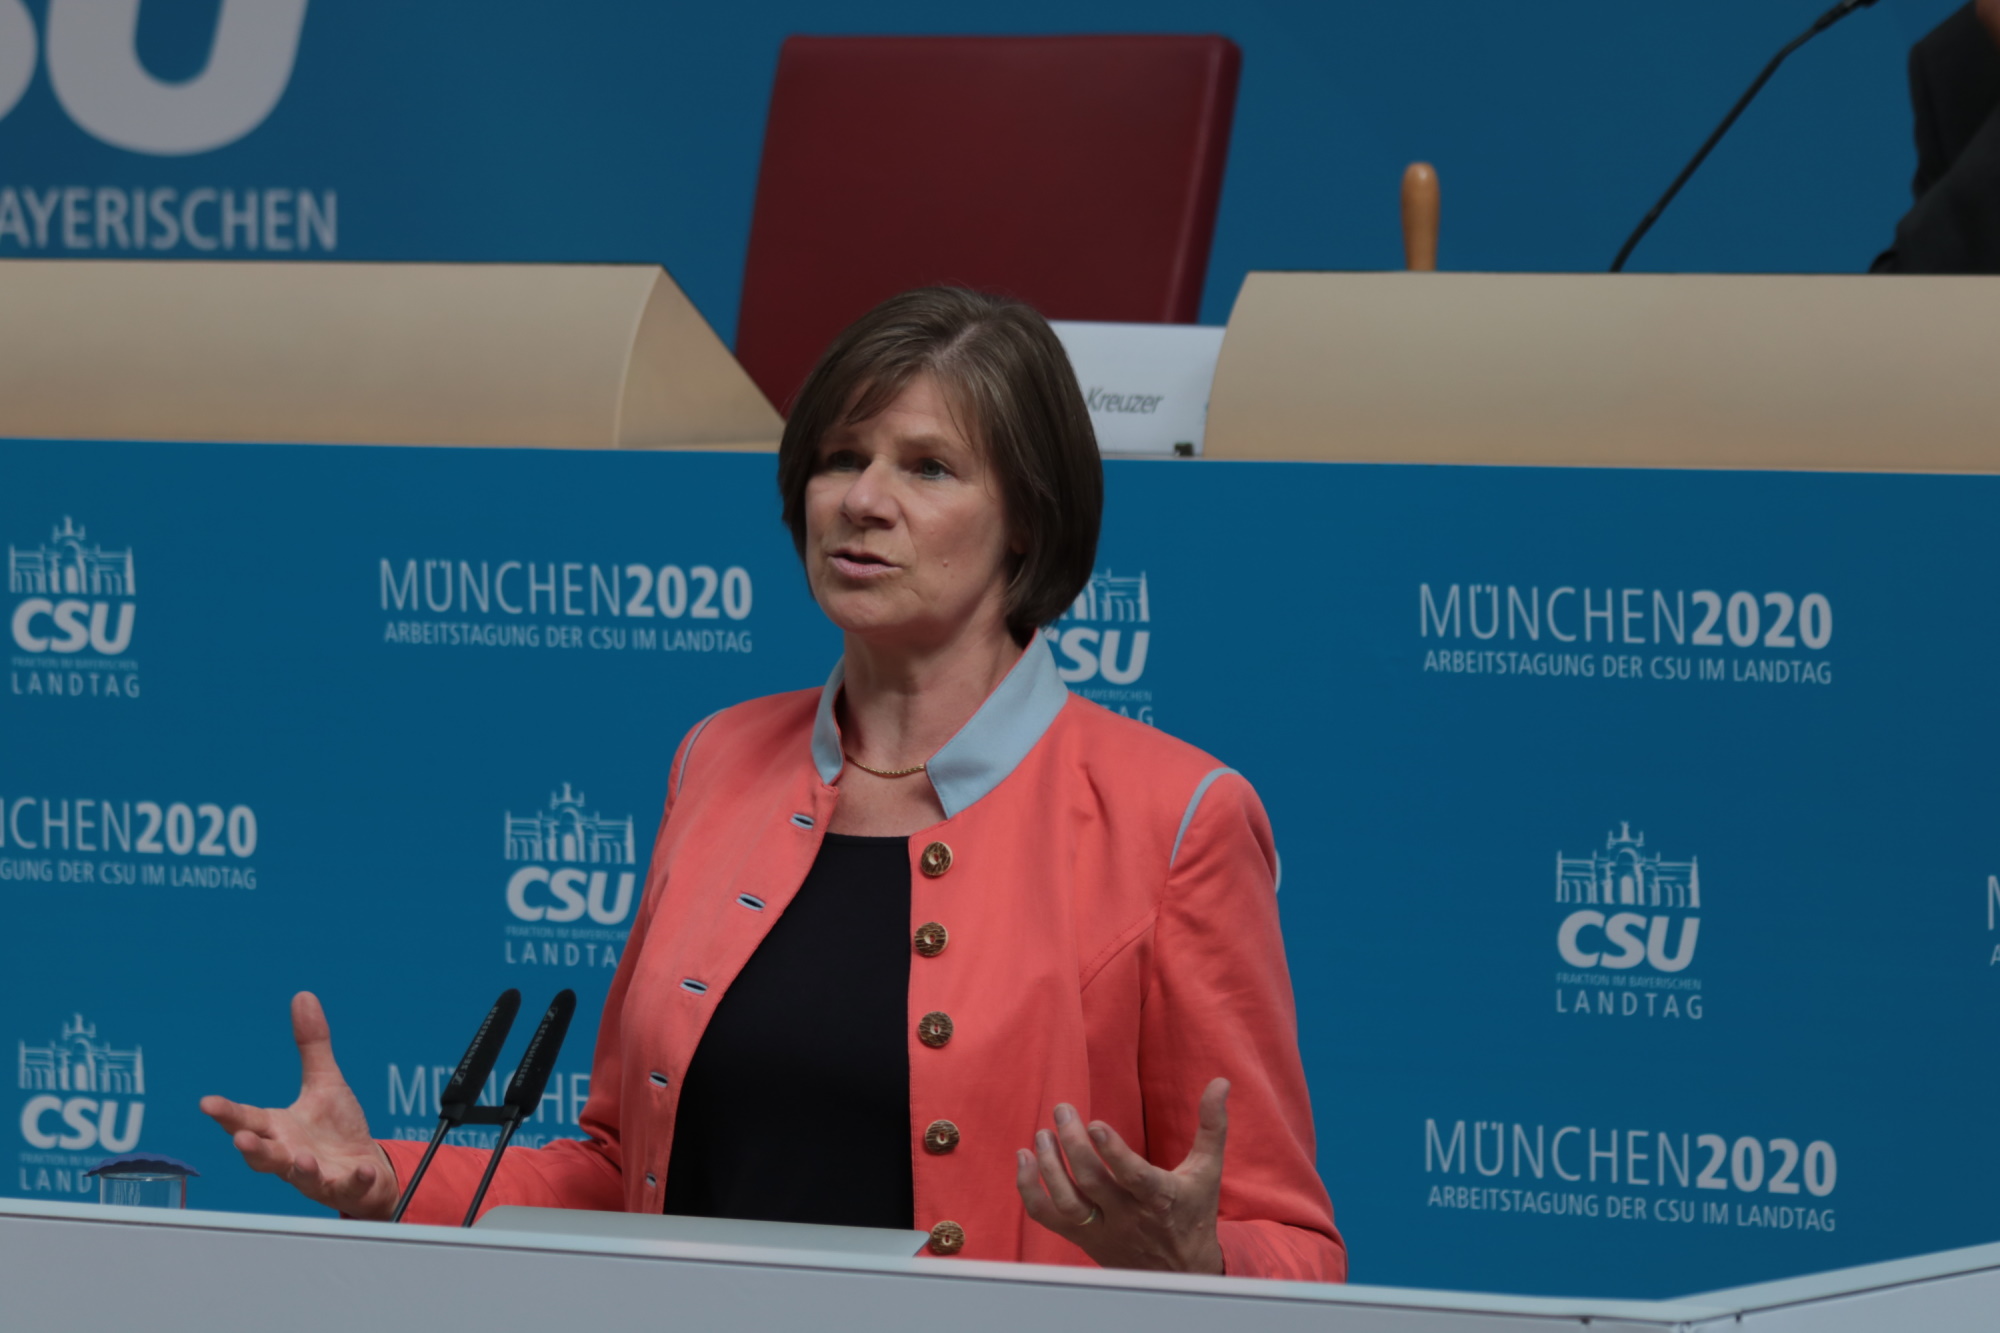 München2020: Prof. Dr. Ulrike Protzer, Direktorin des Instituts für Virologie an der TU München und Mitglied im Expertenrat der Bayerischen Staatsregierung zur Corona-Krise